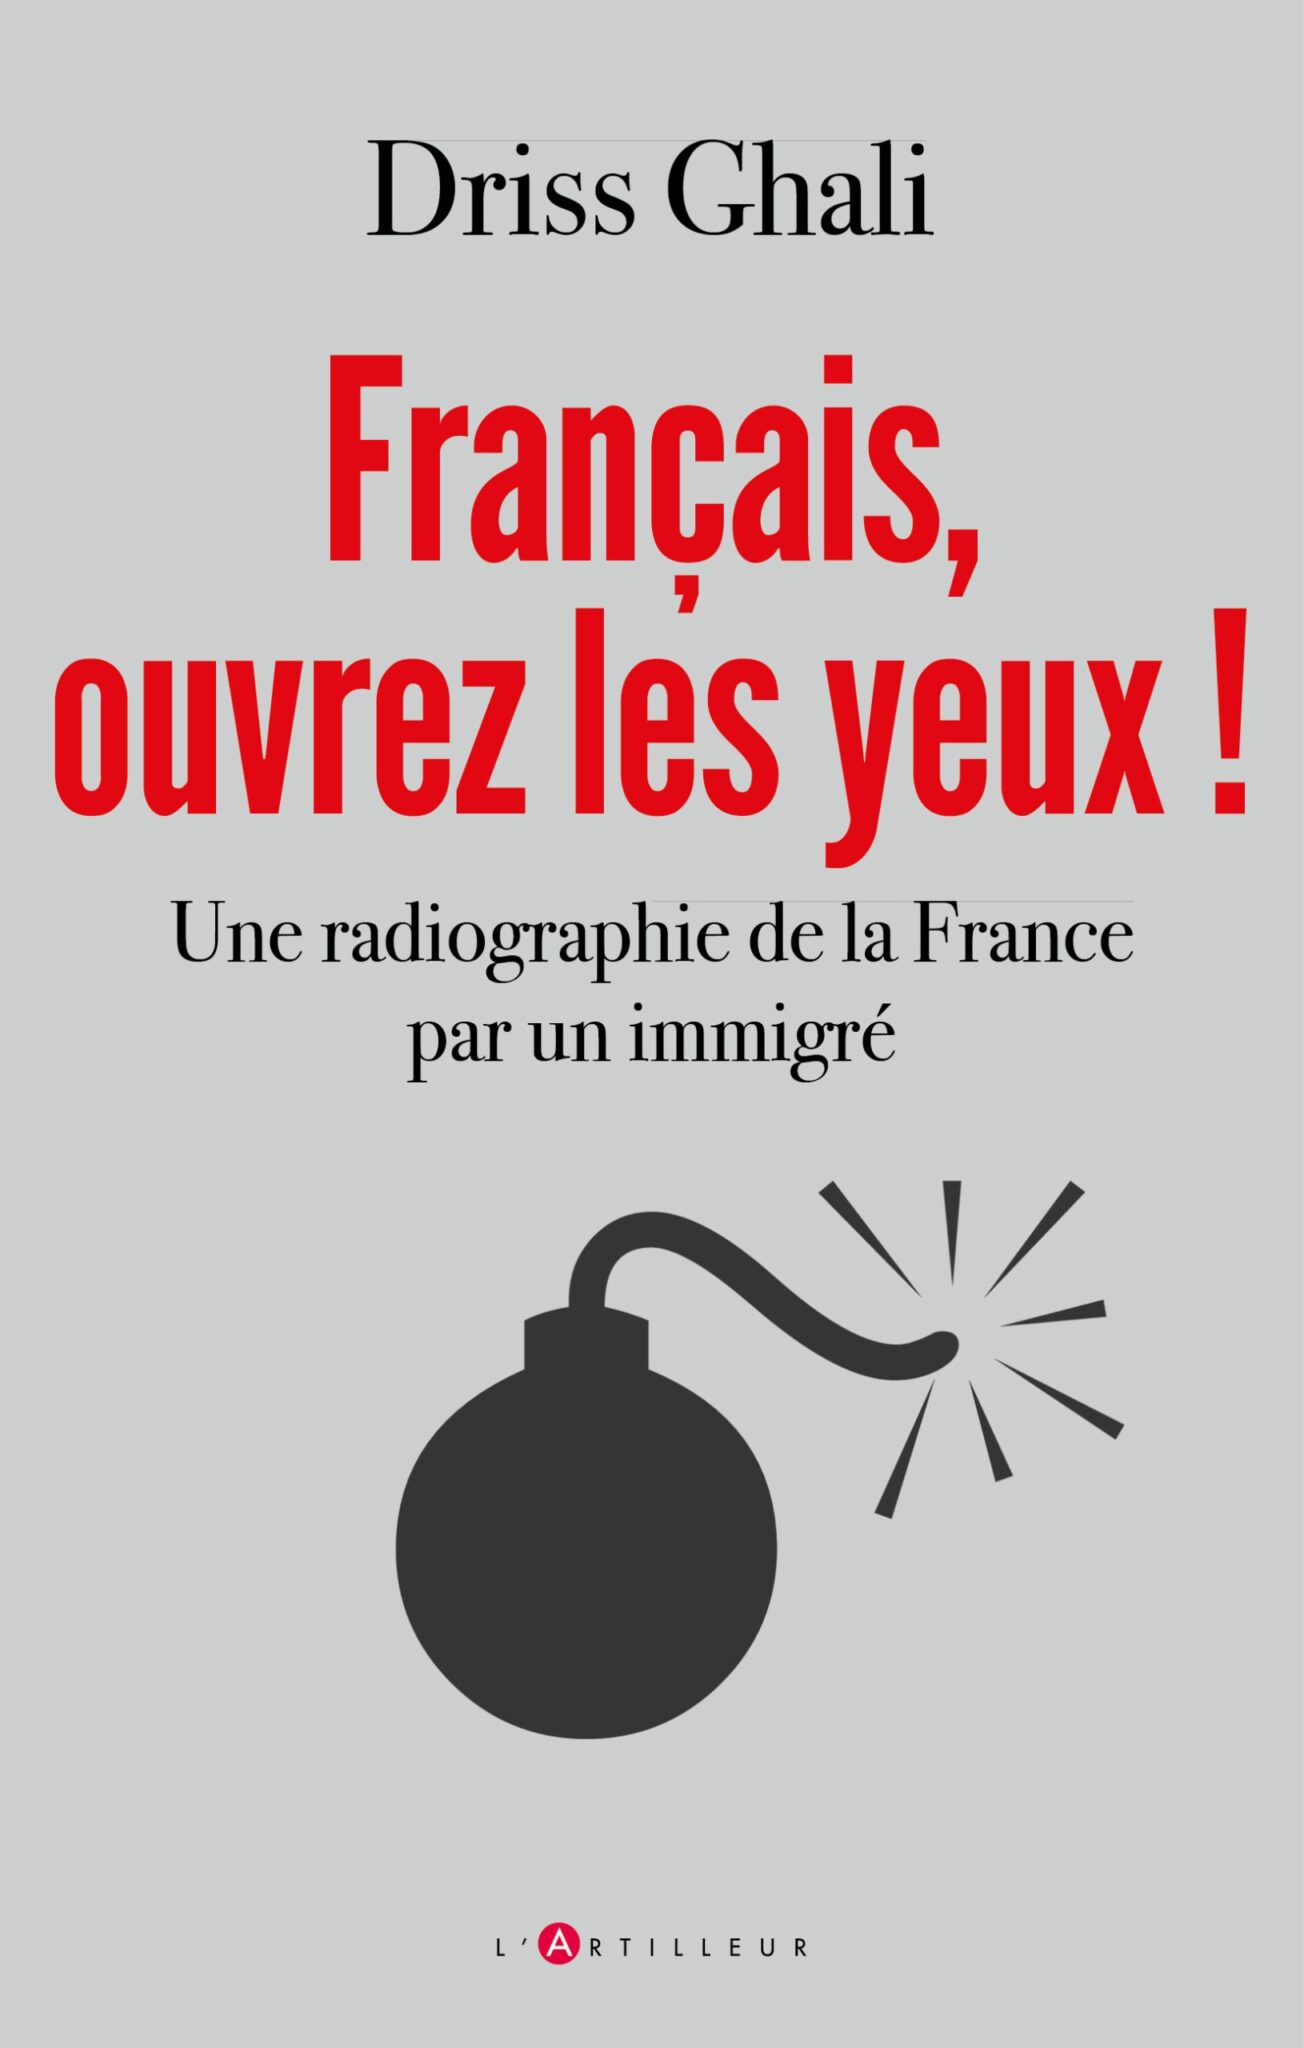 Un Marocain musulman veut ouvrir les yeux des Français